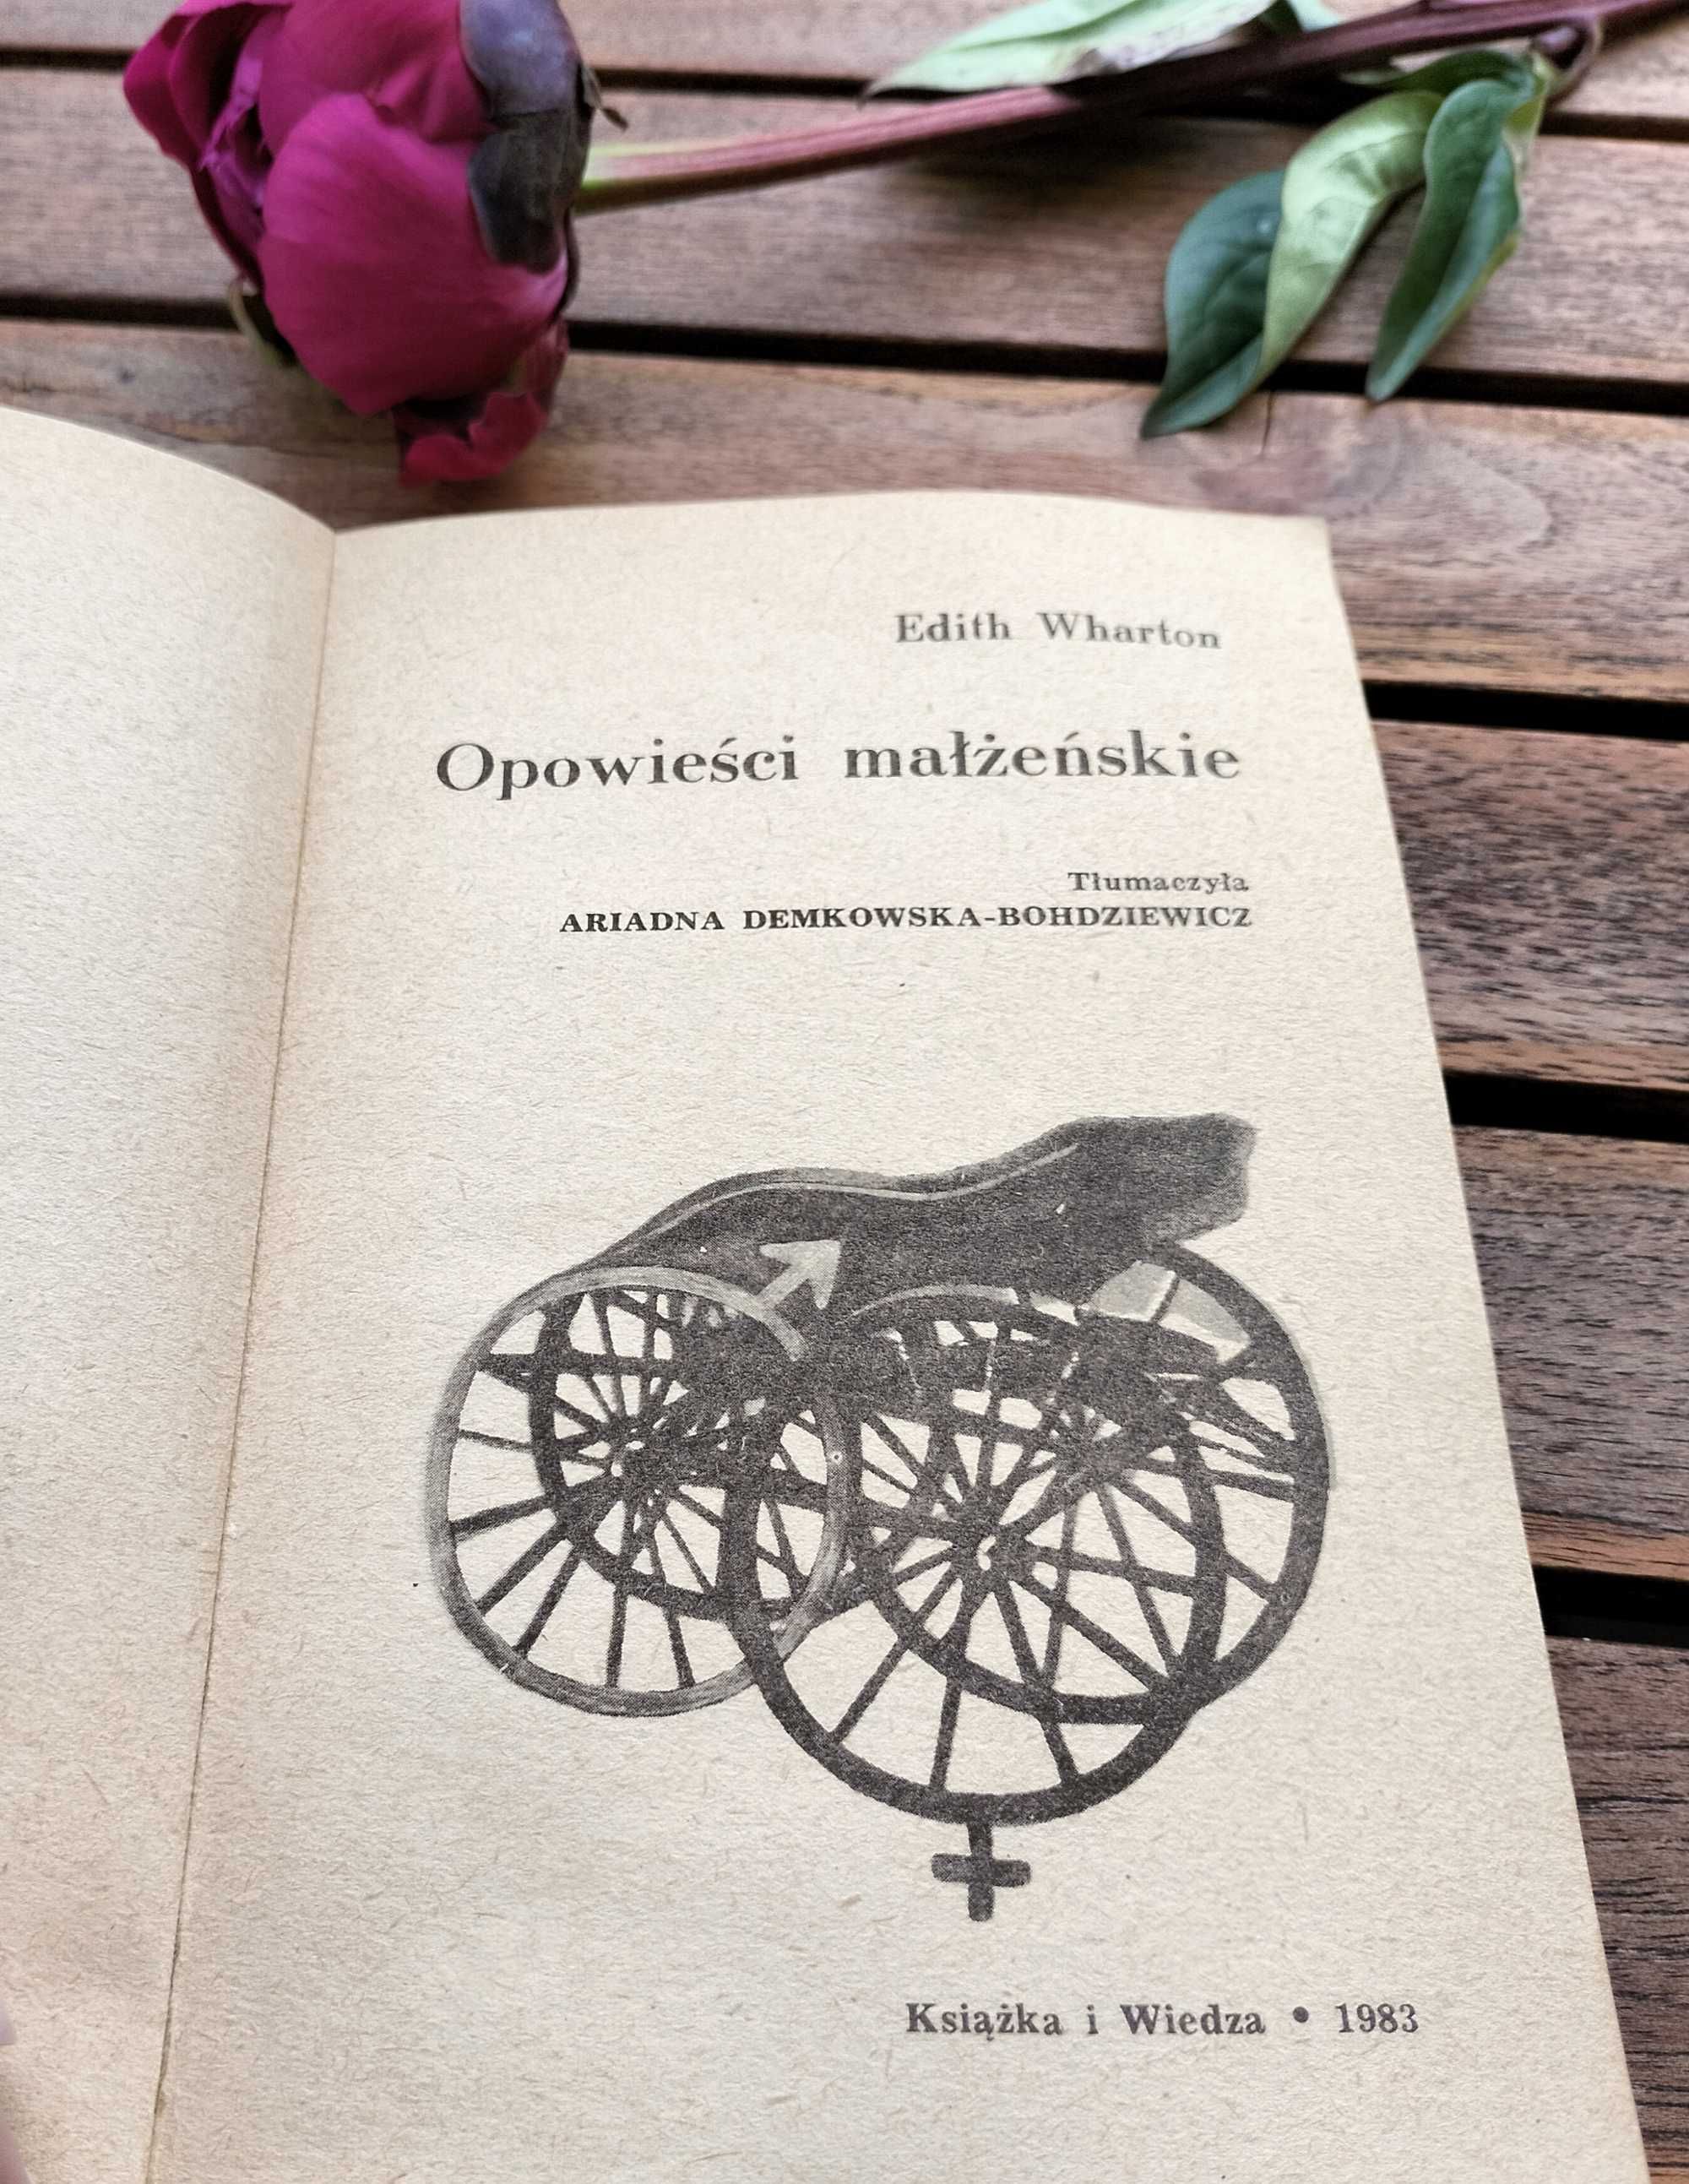 Książka "Opowieści małżeńskie" Edith Wharton